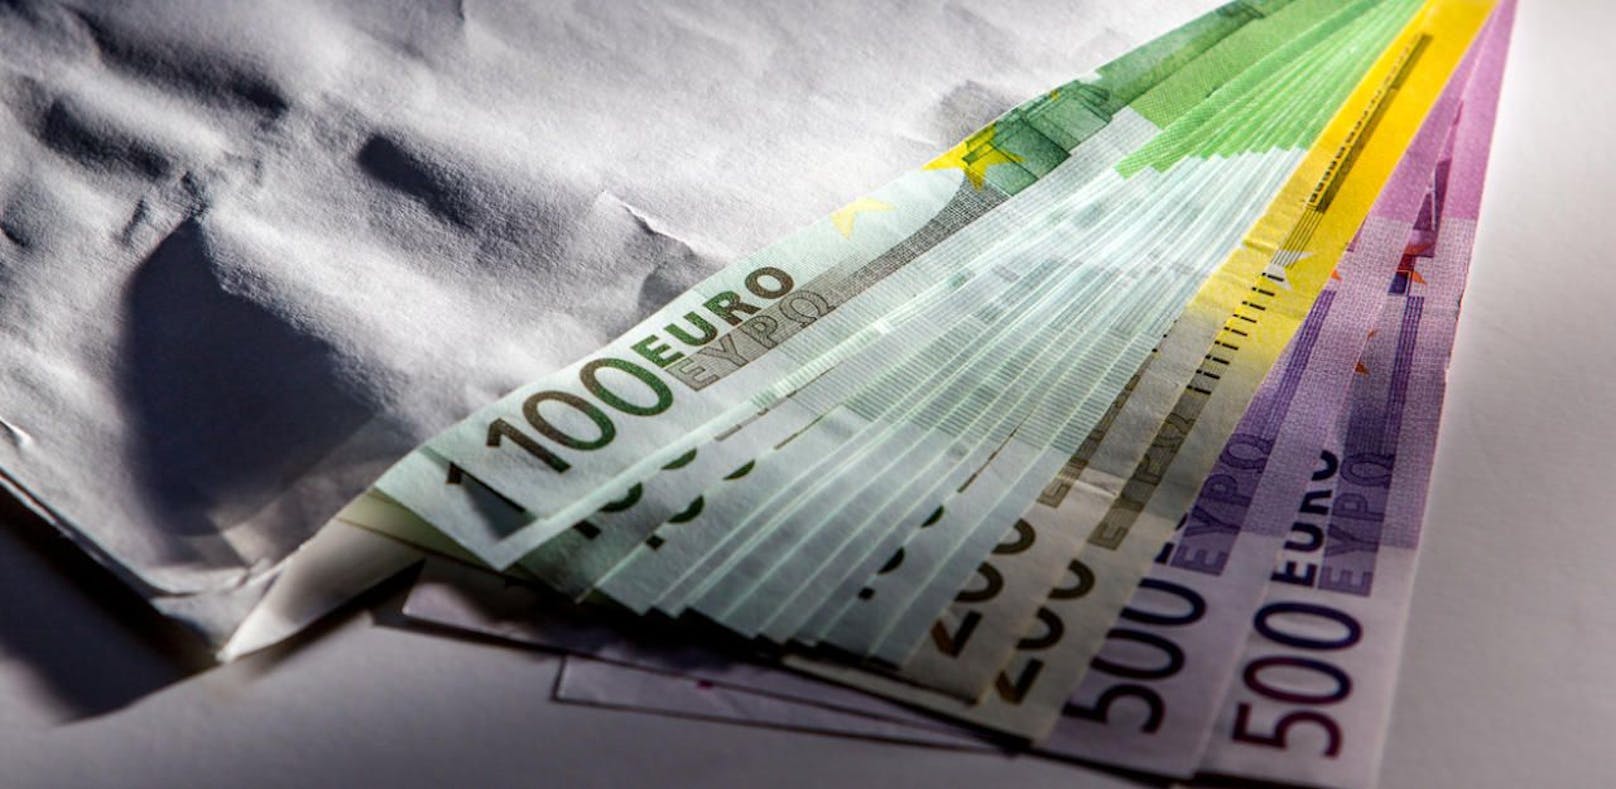 Der Pensionist fand mehrere tausend Euro und brachte das Geld zur Polizei